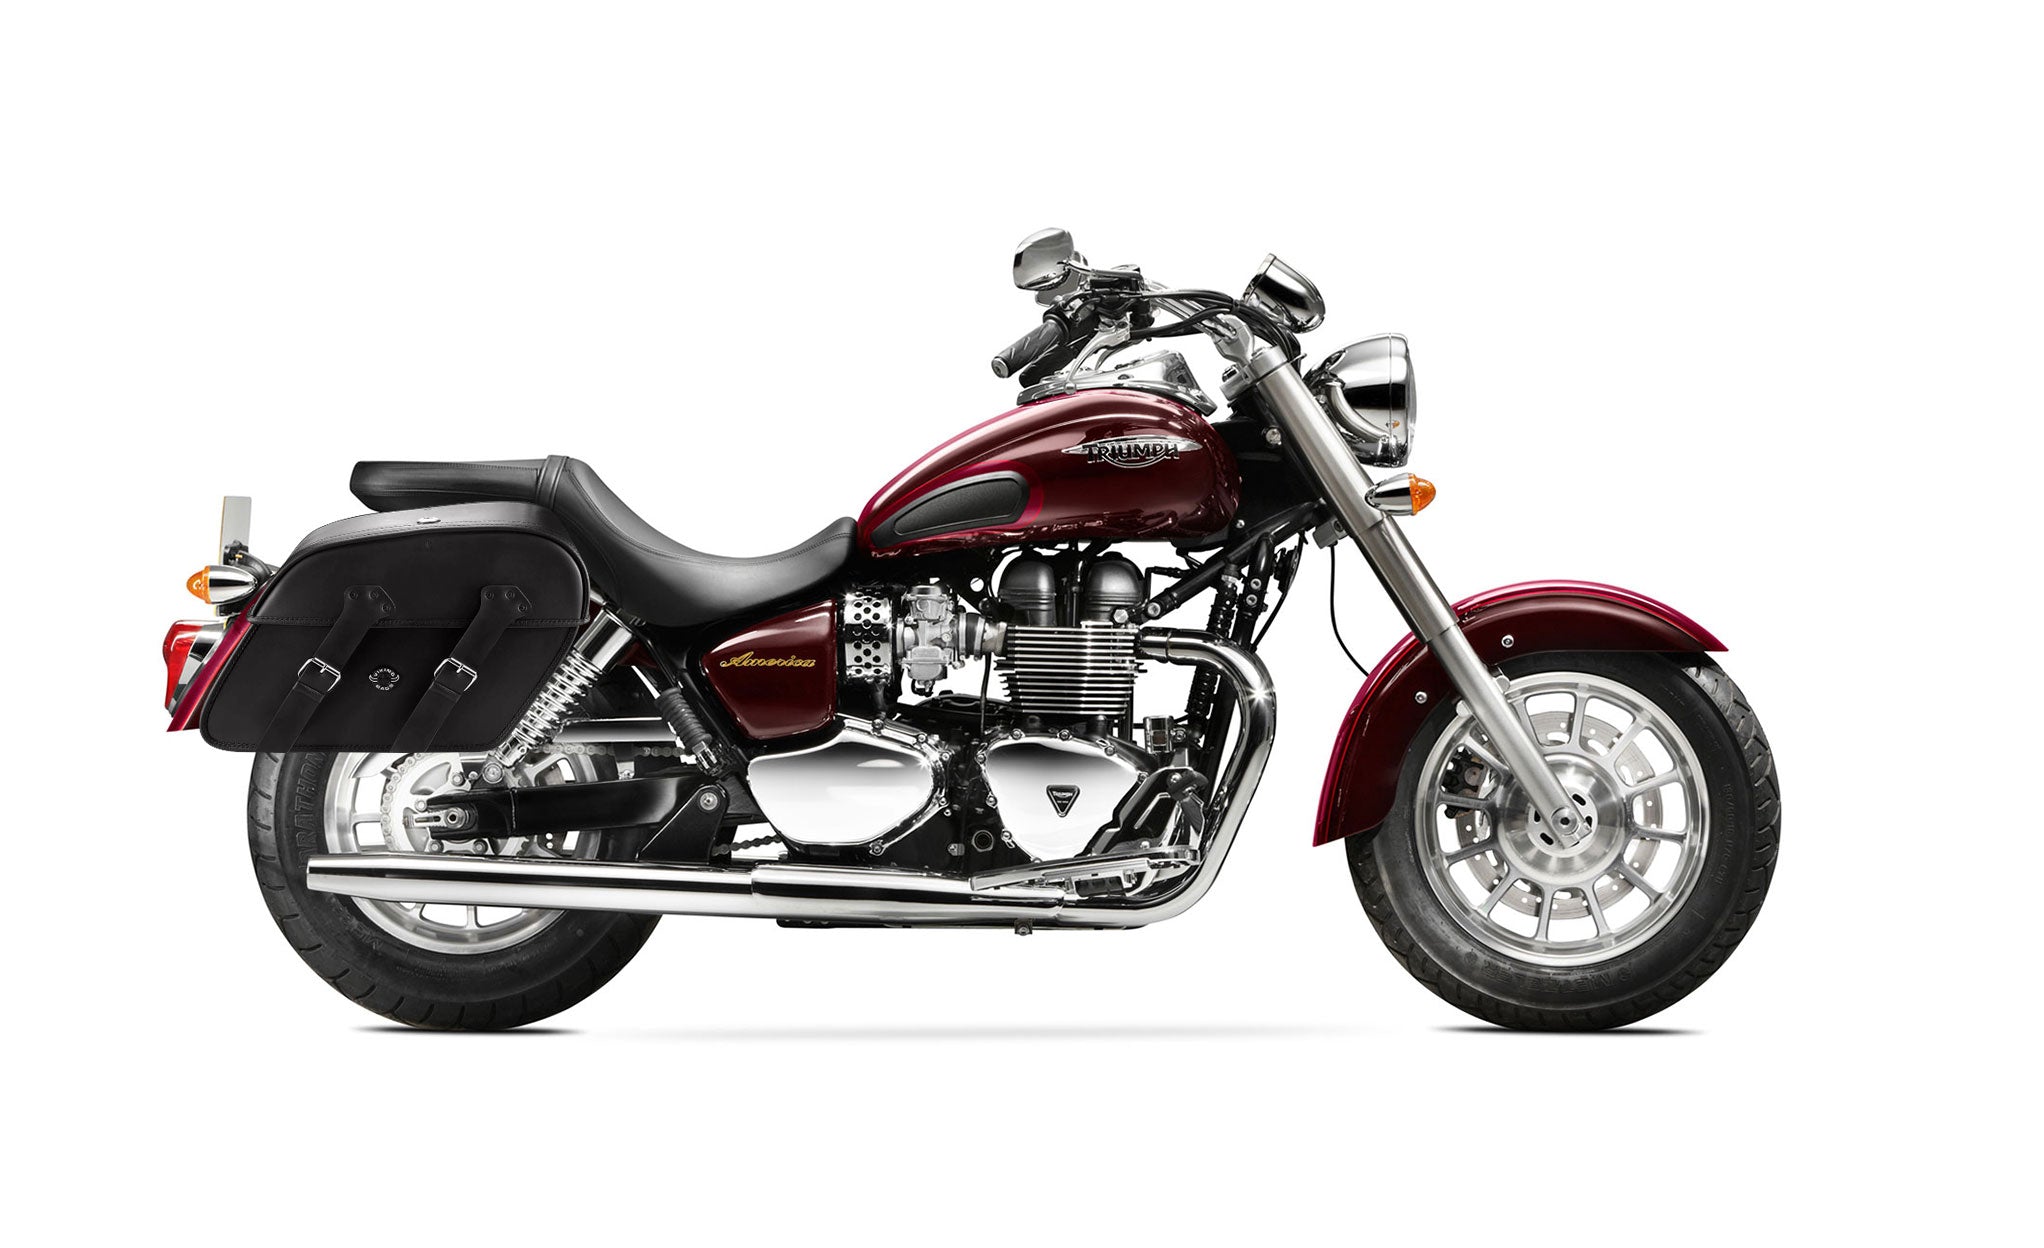 Viking Raven Extra Large Triumph America Leather Motorcycle Saddlebags on Bike Photo @expand